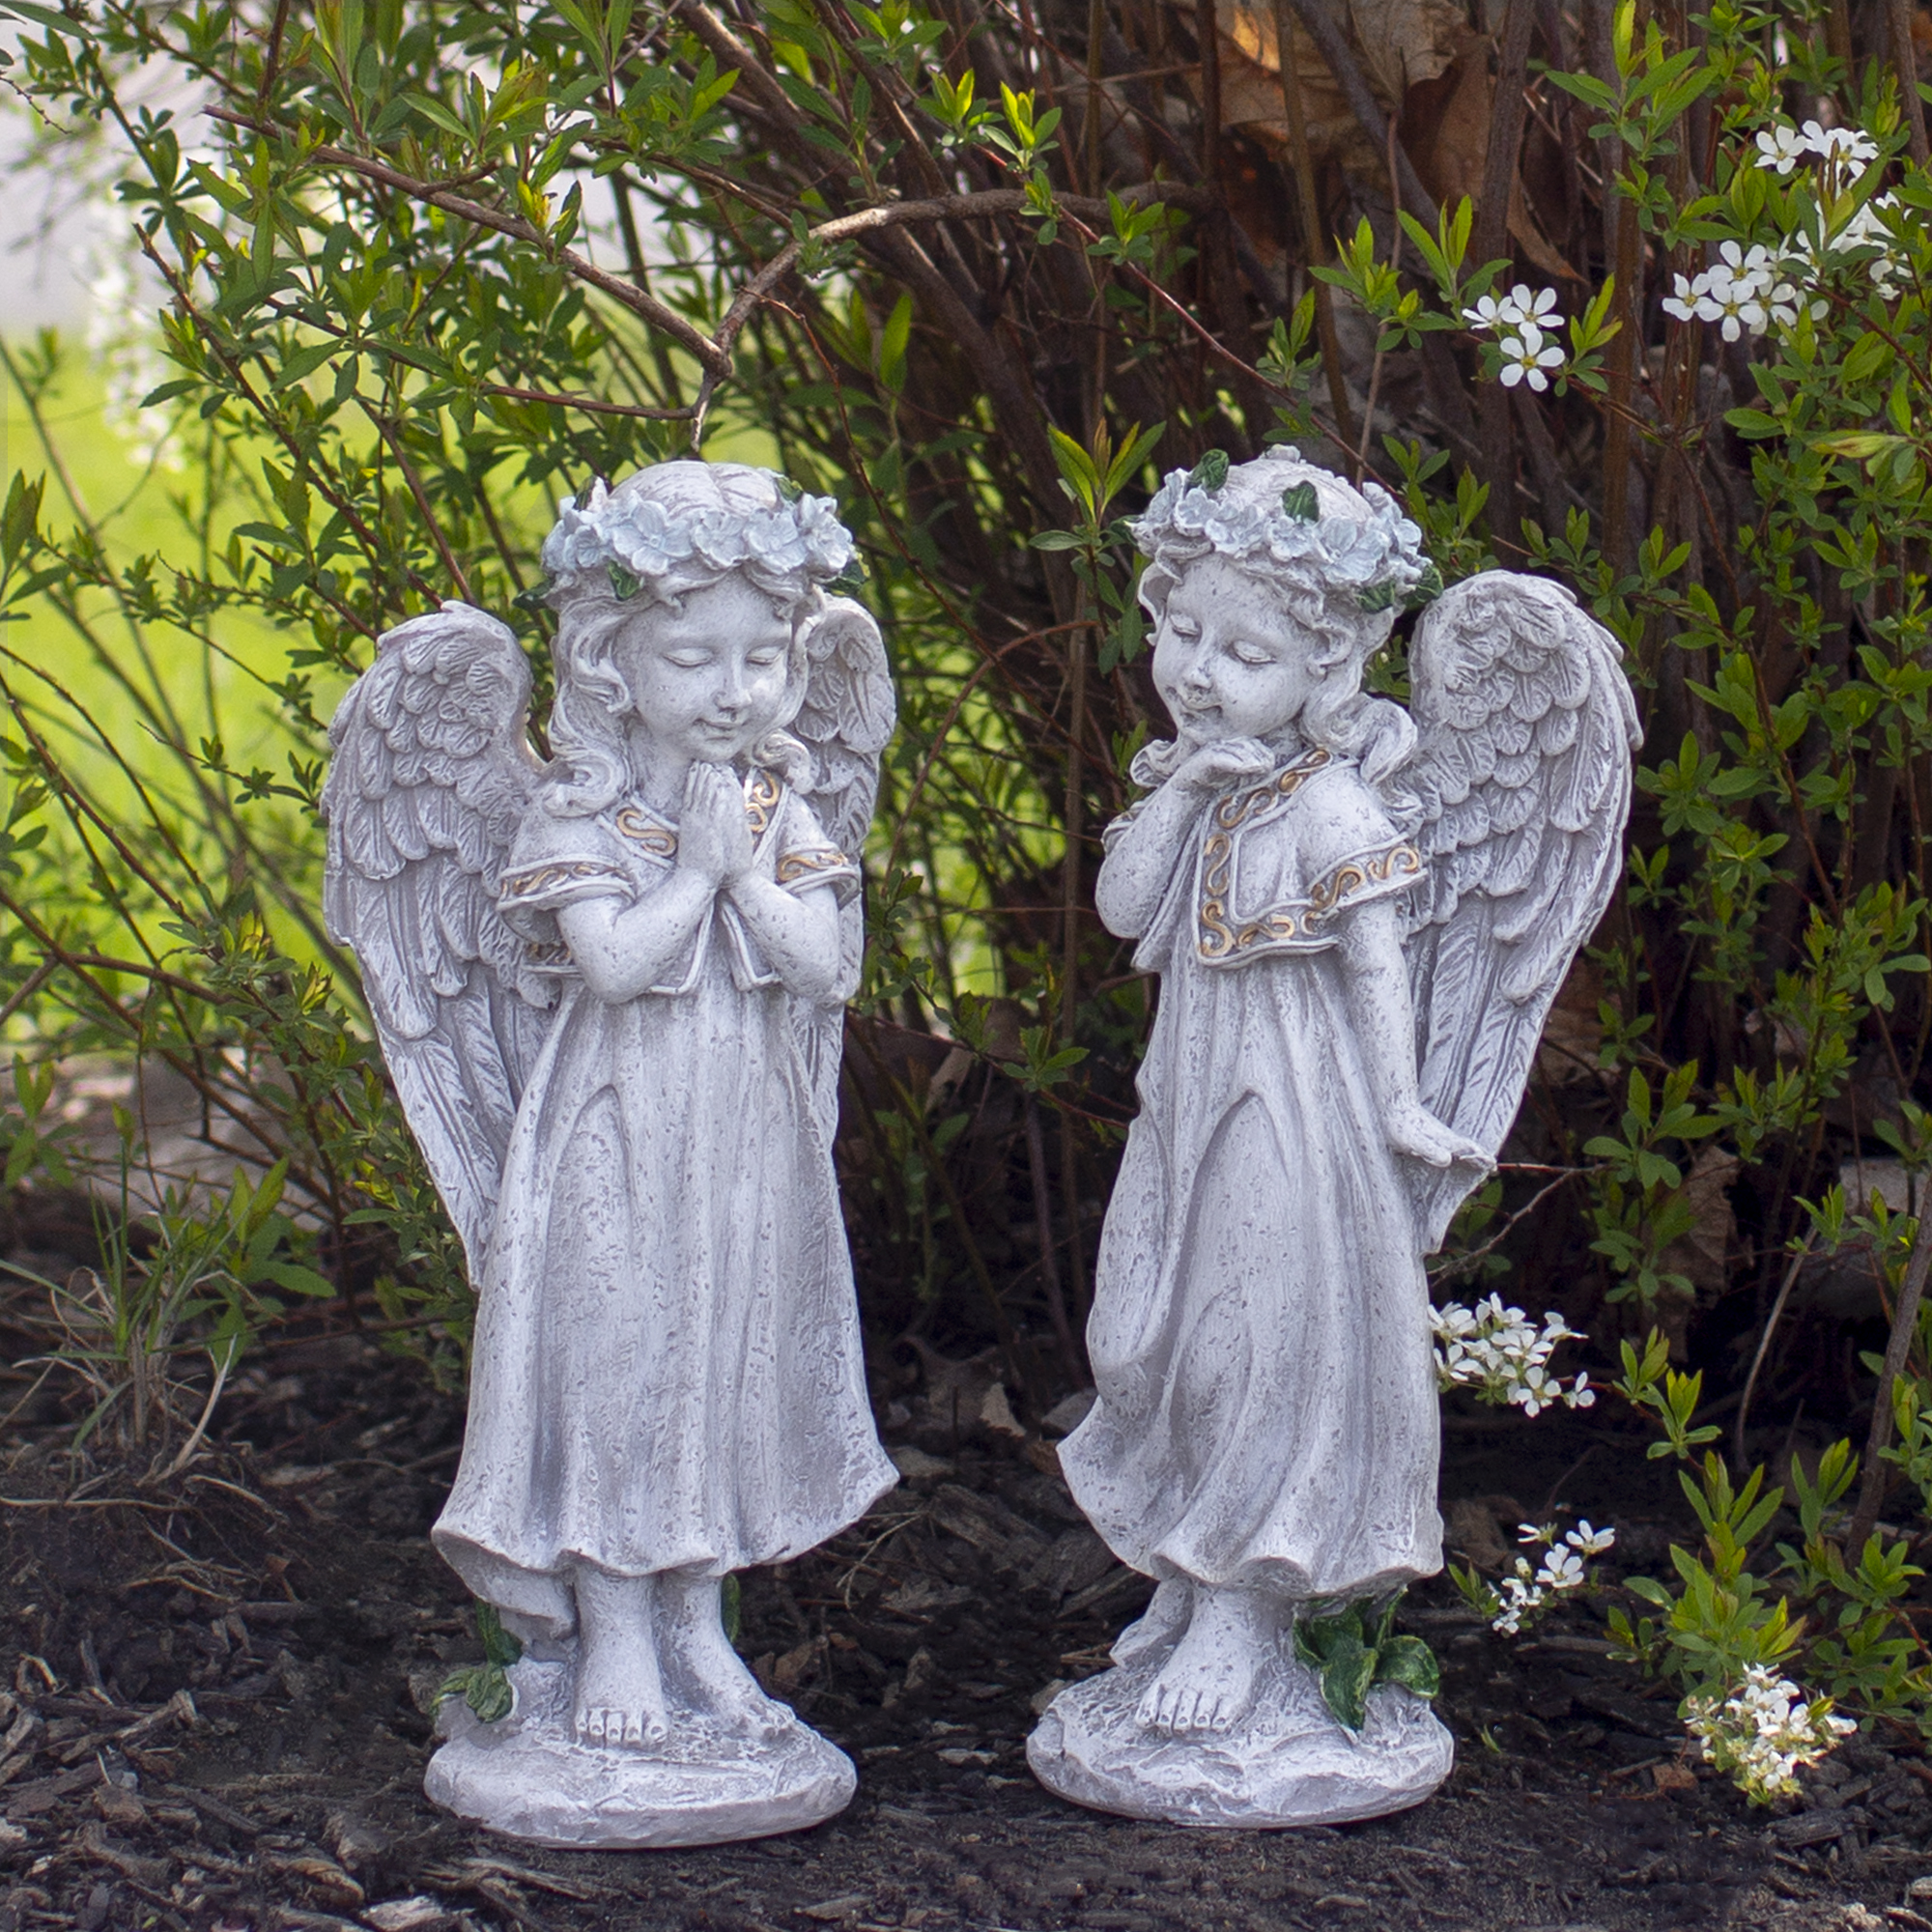 Northlight 10" Angel Standing in Prayer Outdoor Garden Statue - image 2 of 5